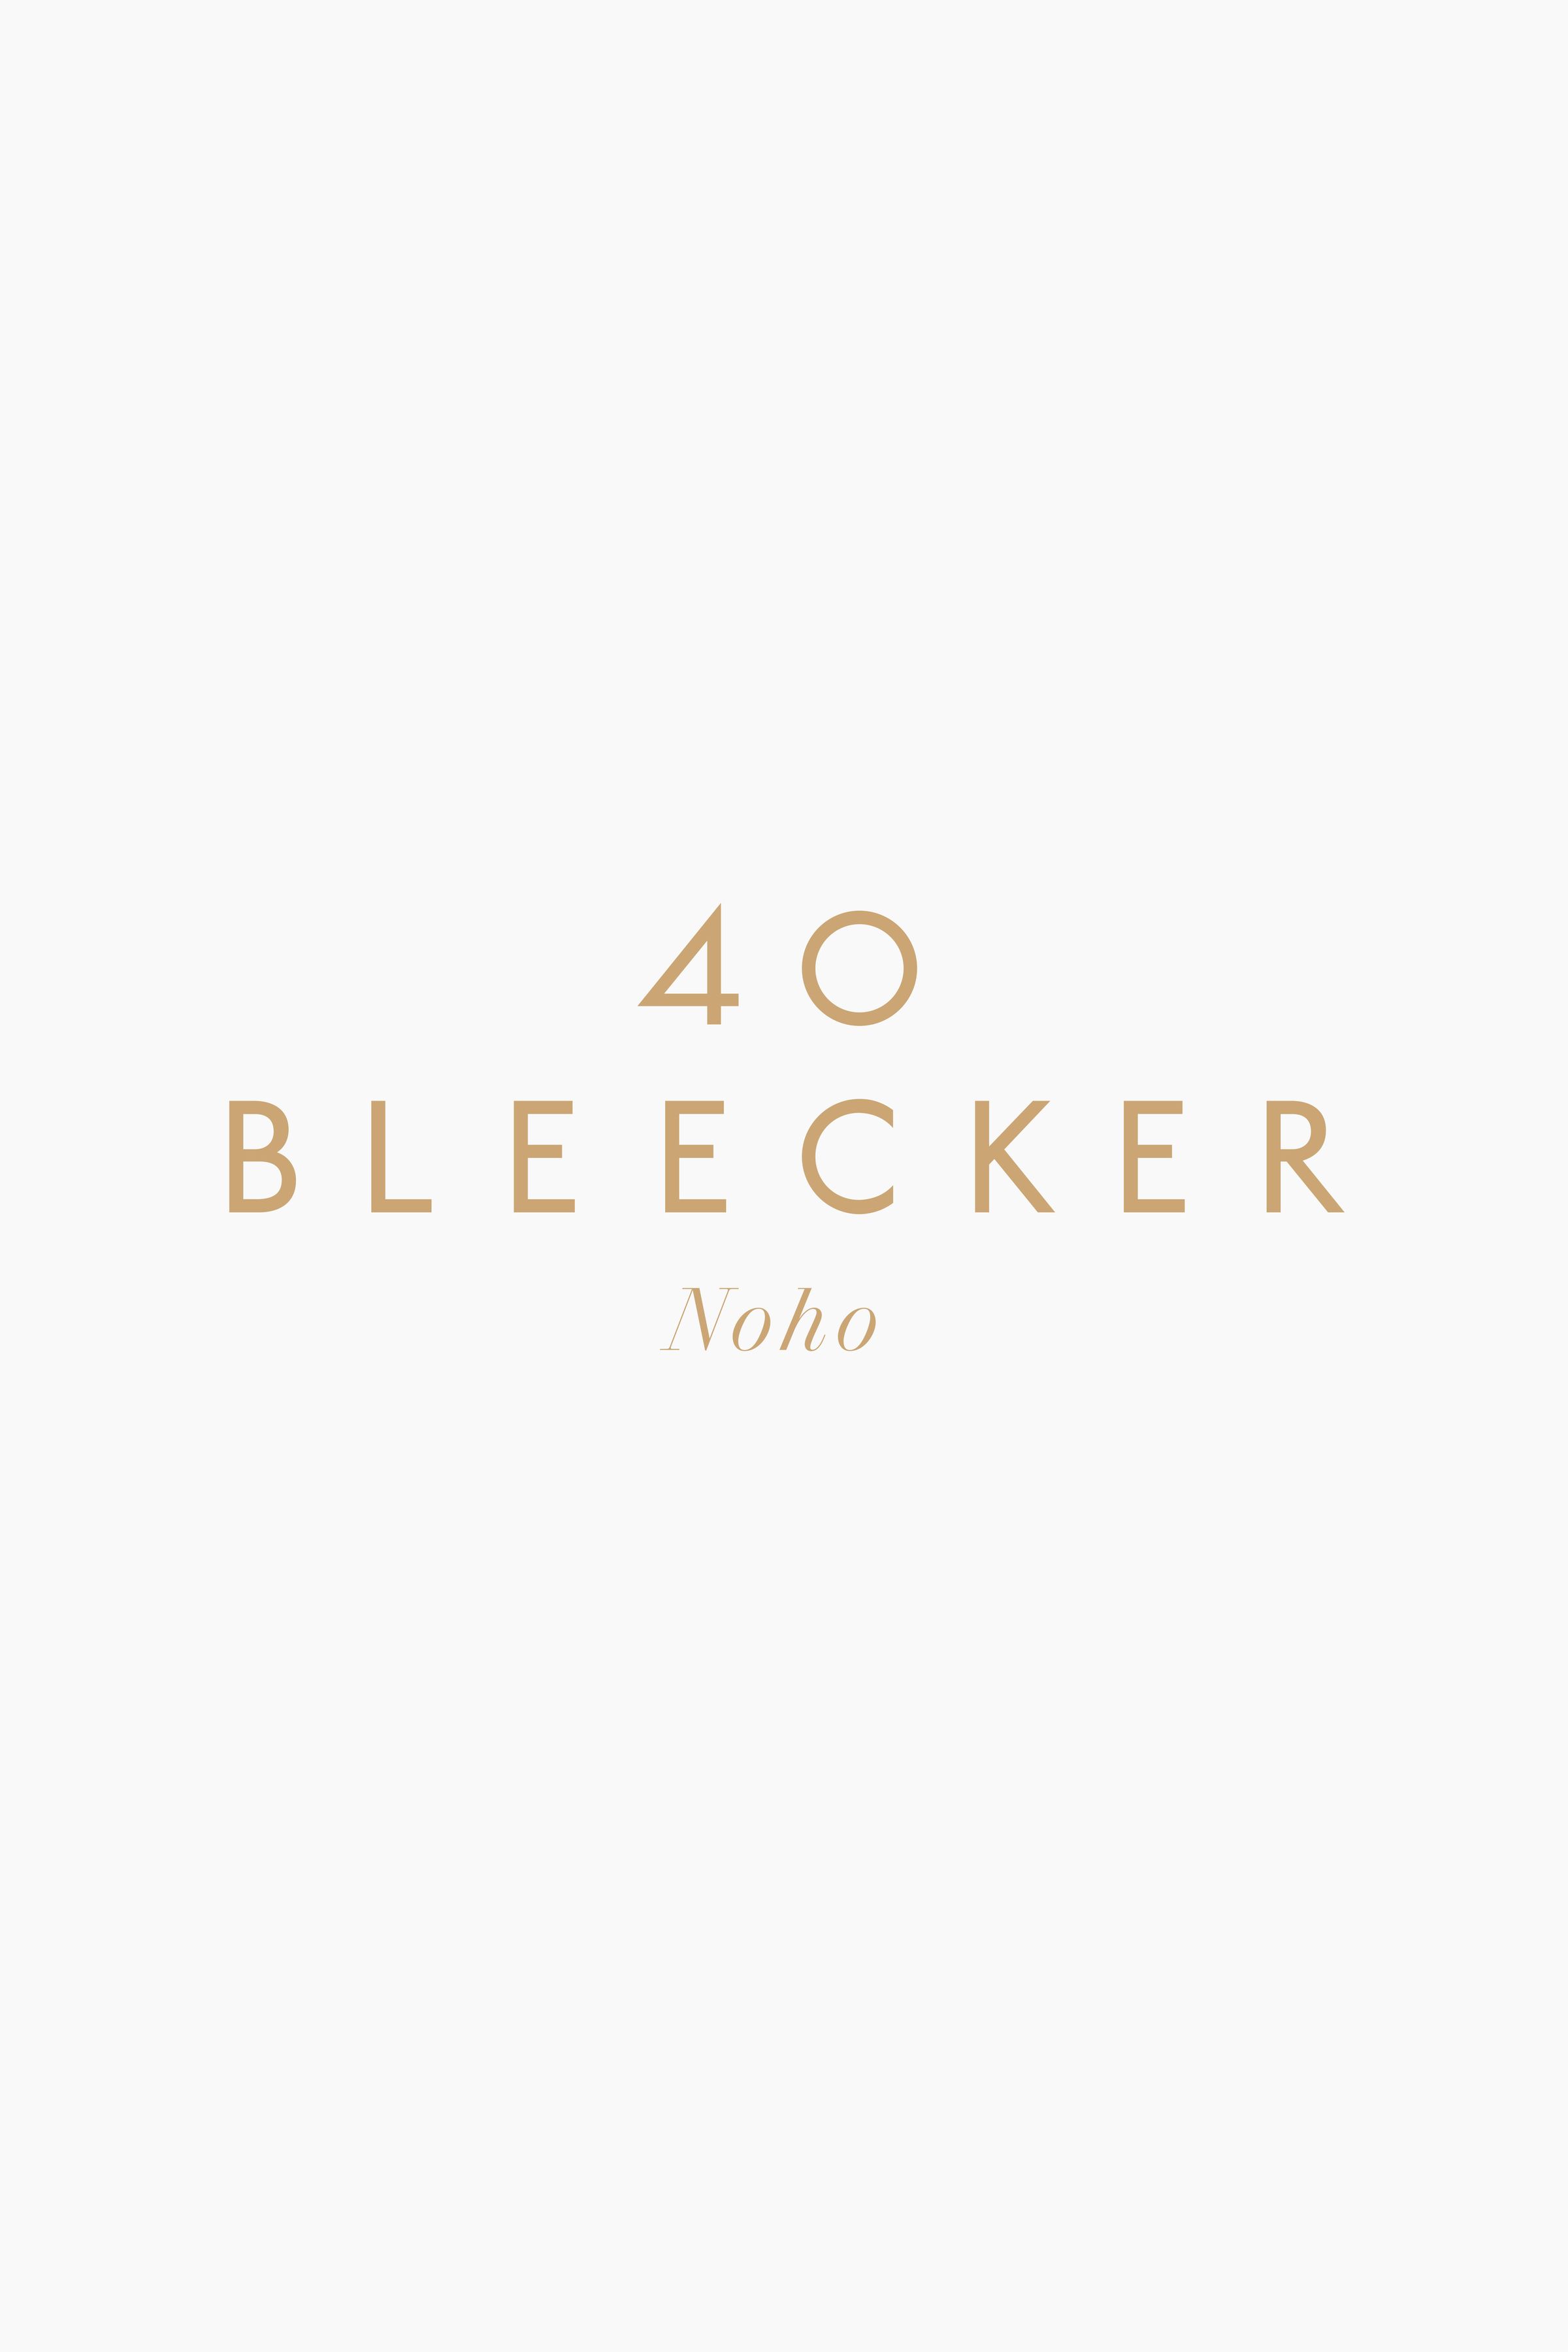 40 Bleecker logo design